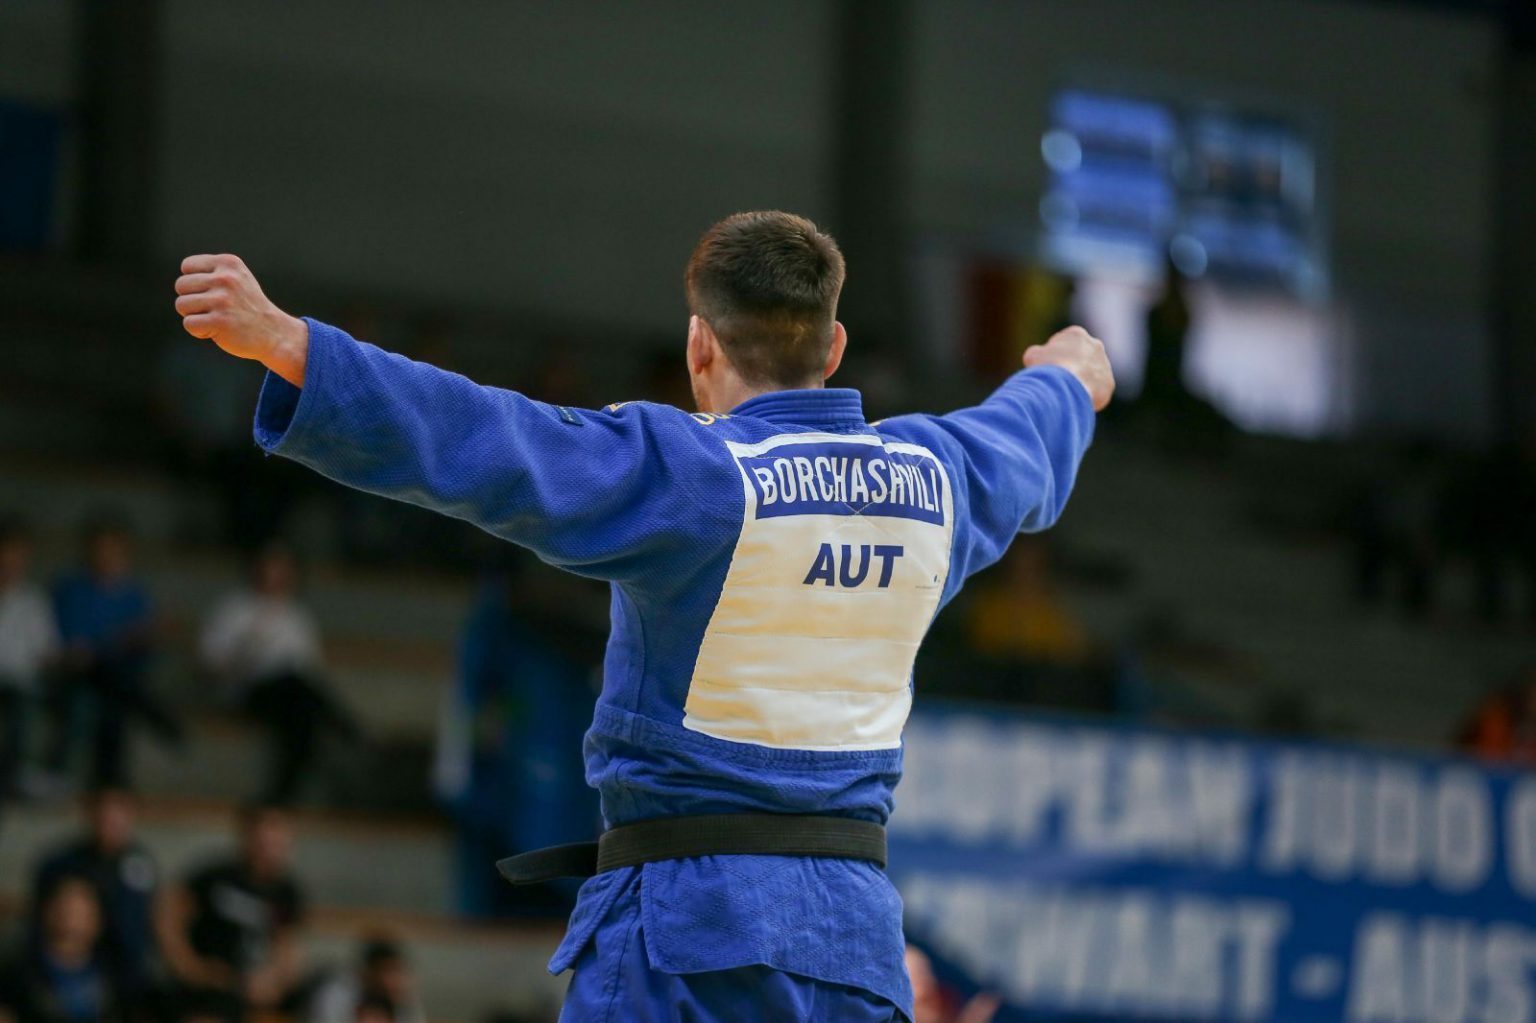 Resümee und Zukunft des European Judo Open in Oberwart